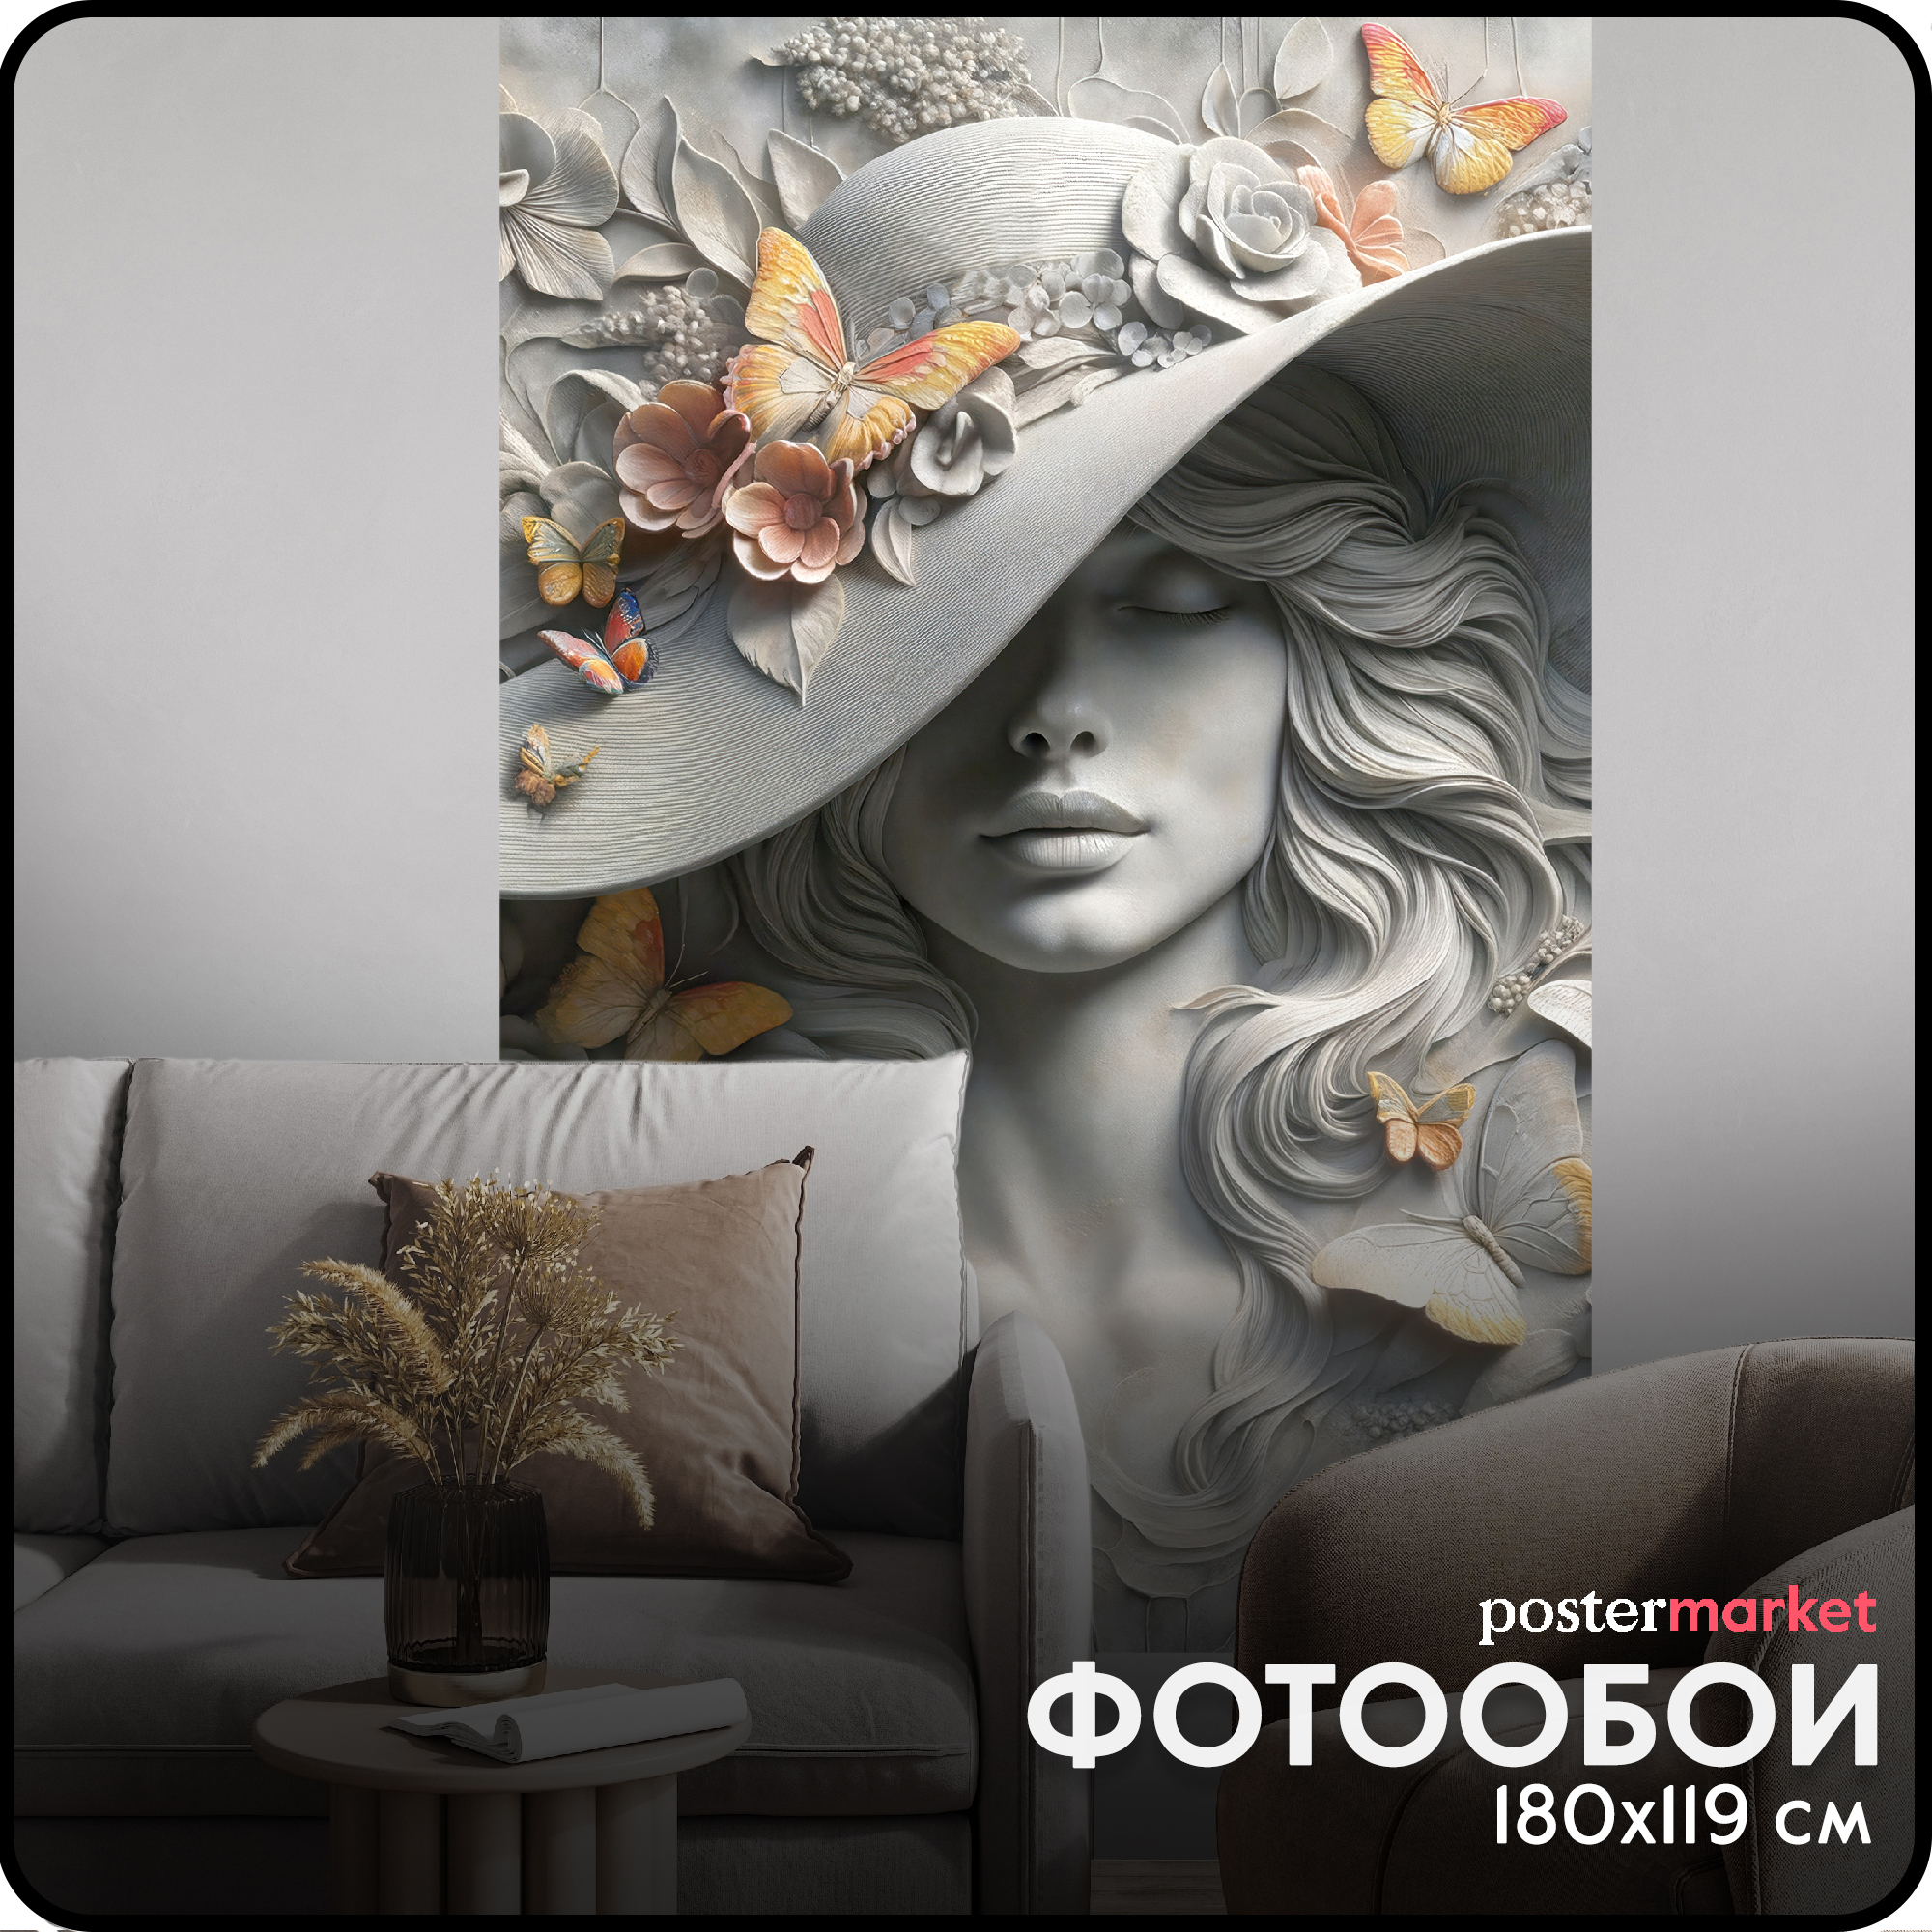 Фотообои бумажные Postermarket WM-505NL Барельеф Девушка в шляпе 119х180 см